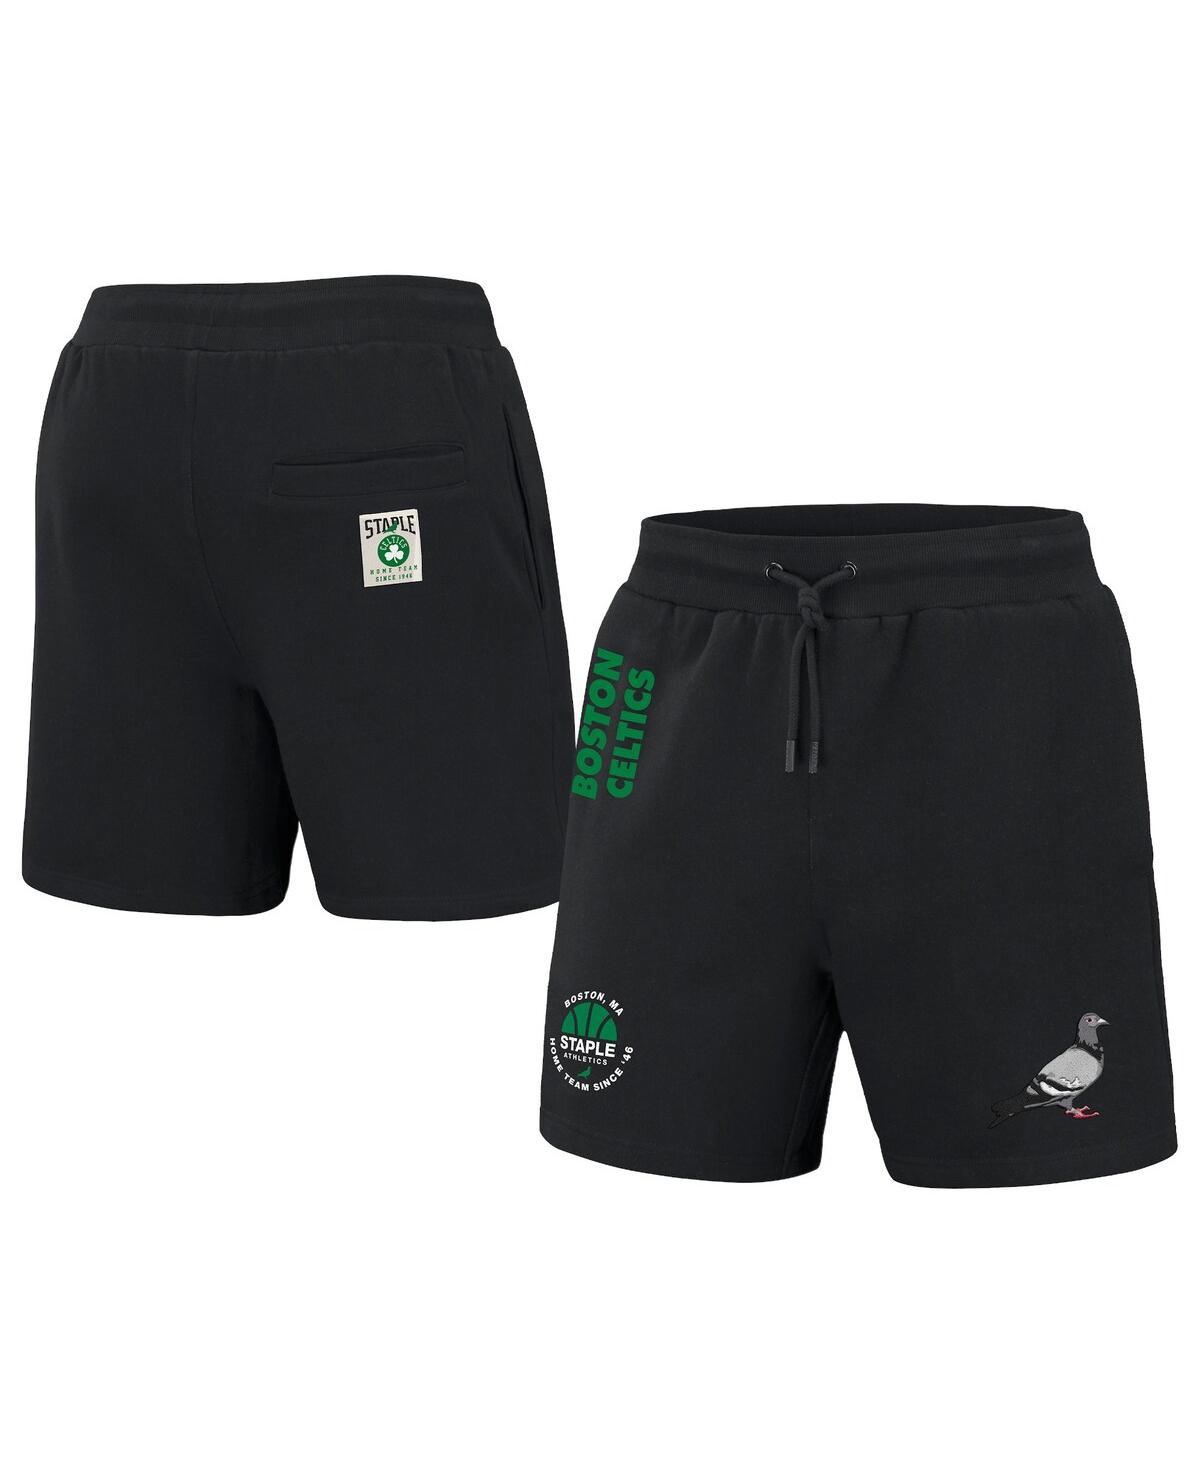 Men's Nba x Staple Black Boston Celtics Home Team Shorts - Black